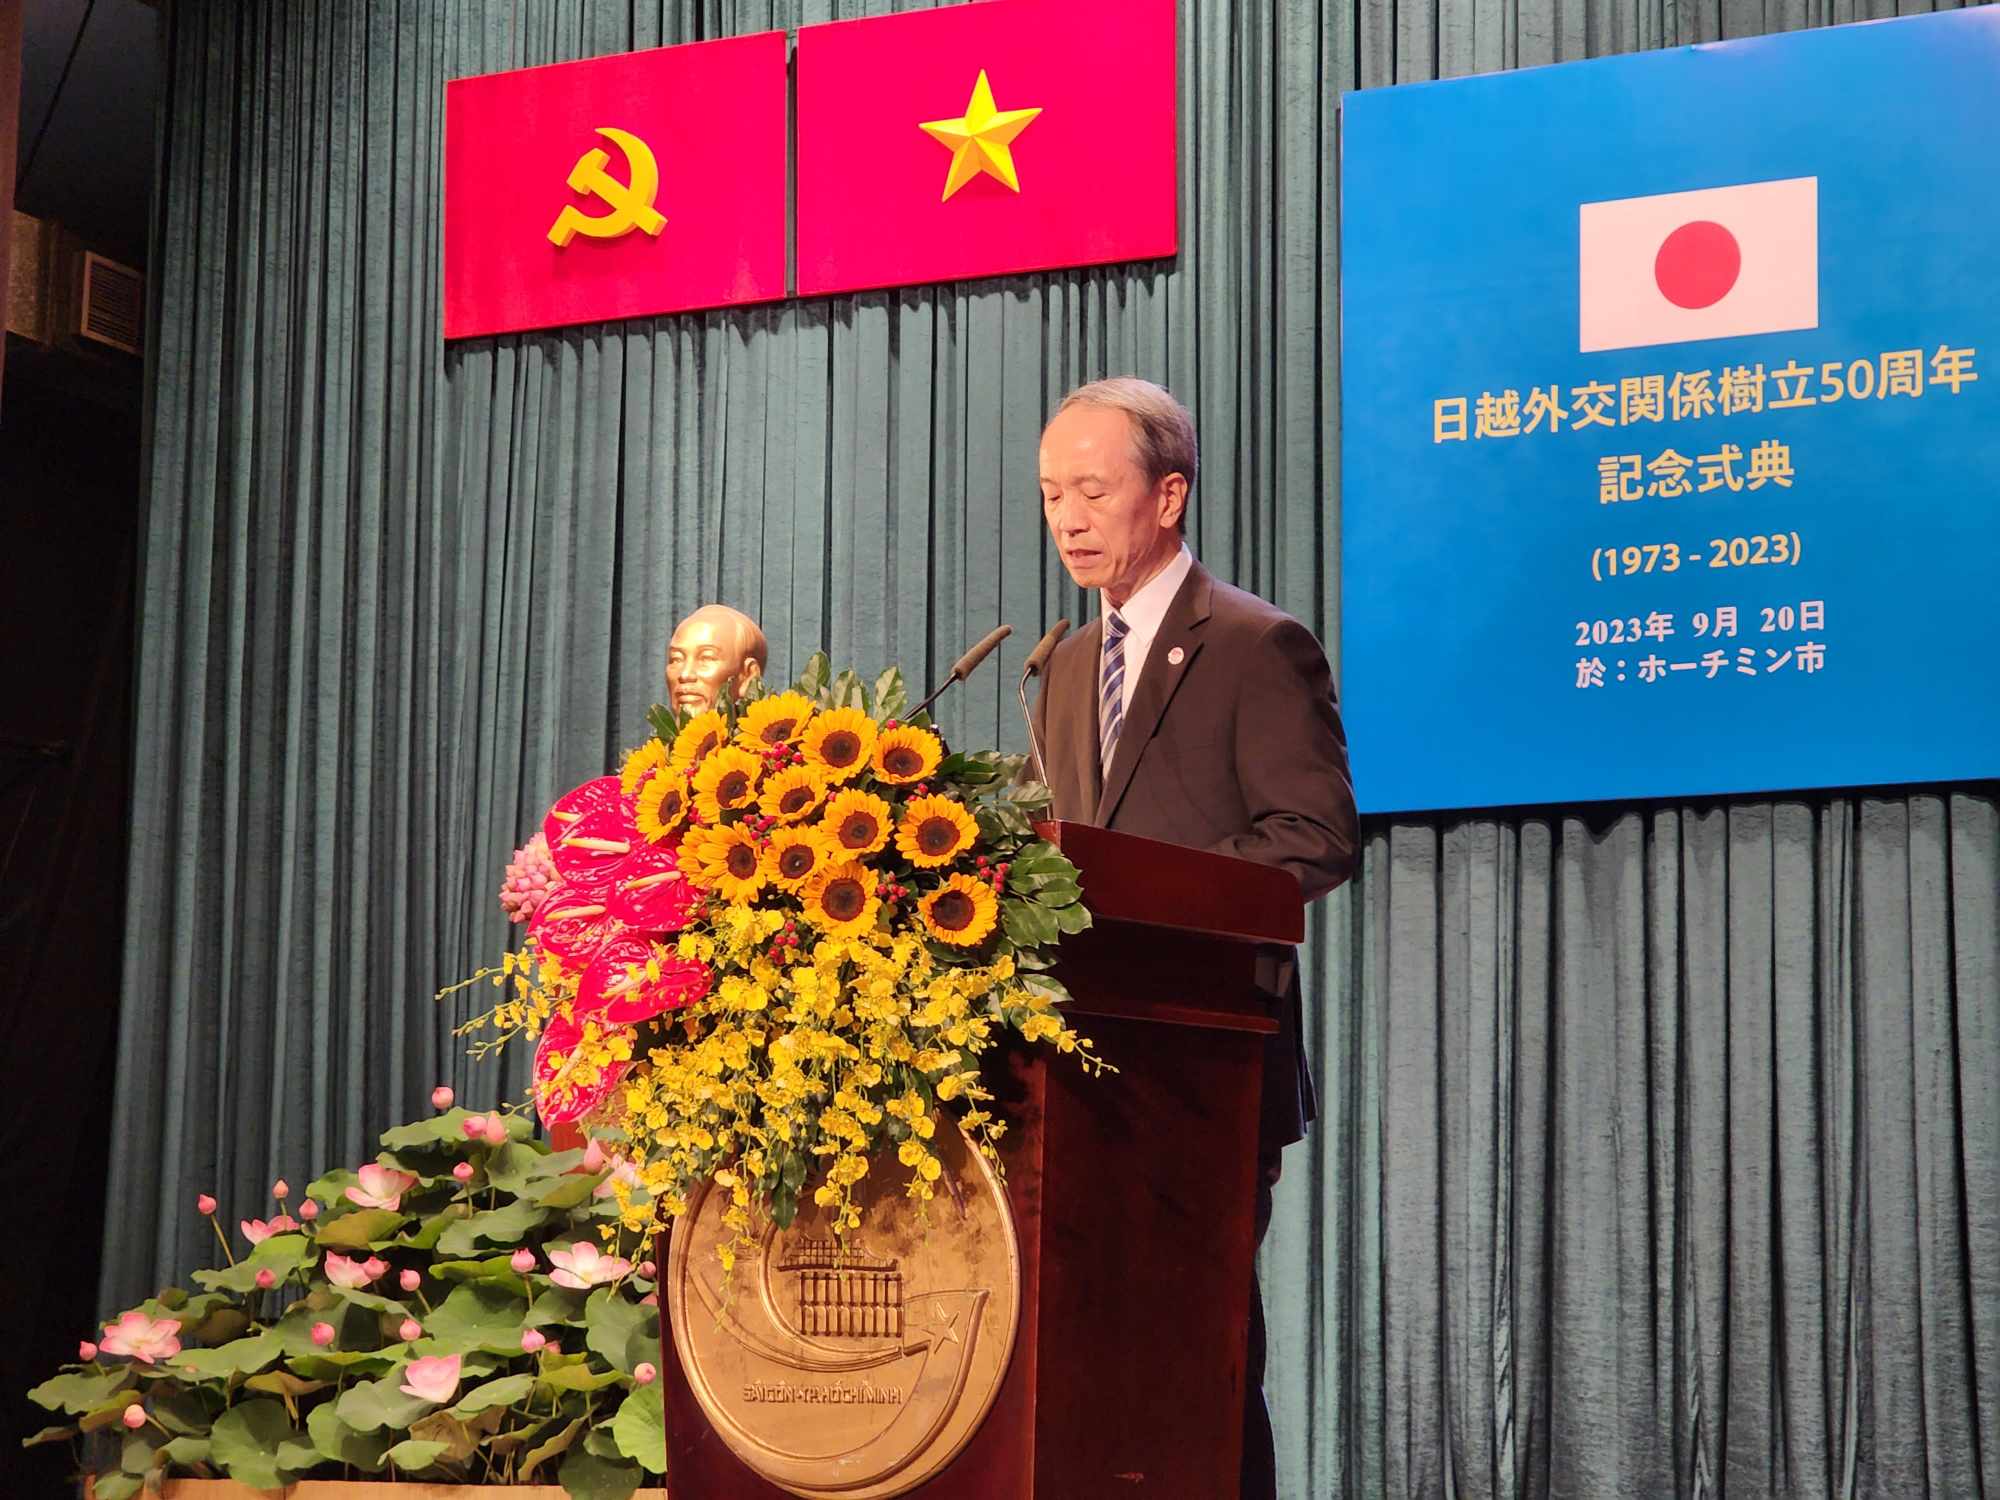 Tổng Lãnh sự Nhật Bản tại TPHCM Ono Masuo bày tỏ mong muốn tình hữu nghị và hợp tác giữa Nhật Bản và Việt Nam trong 50 năm tới sẽ tiếp tục phát triển tốt đẹp.